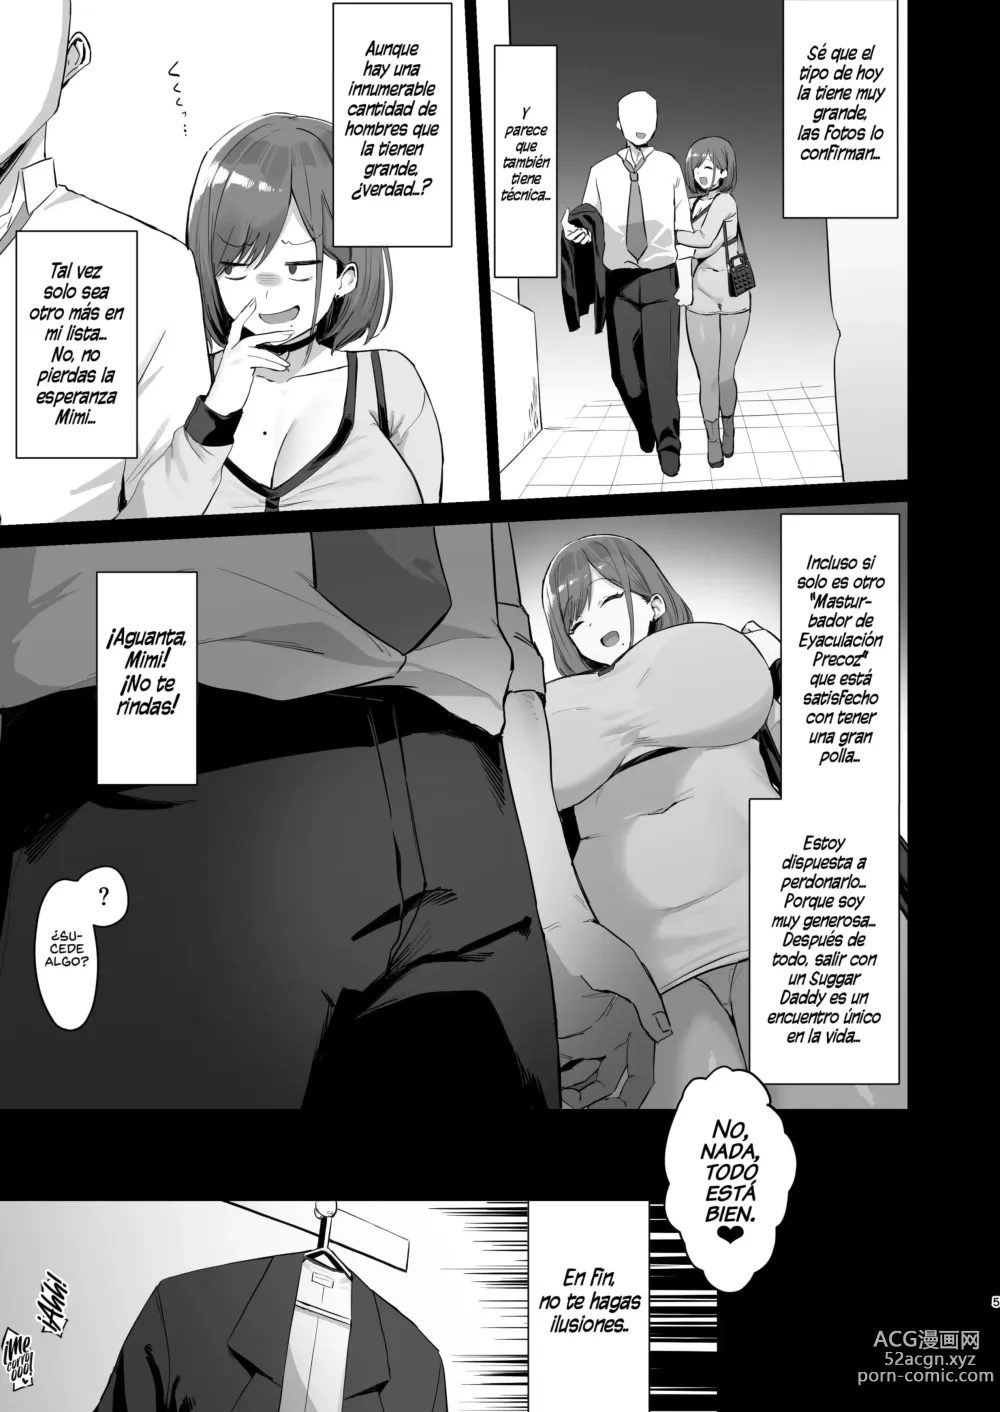 Page 5 of doujinshi Una Colegiala en Búsqueda de un Sugar Daddy, Encontró una buena Polla para Volverla de su Propiedad